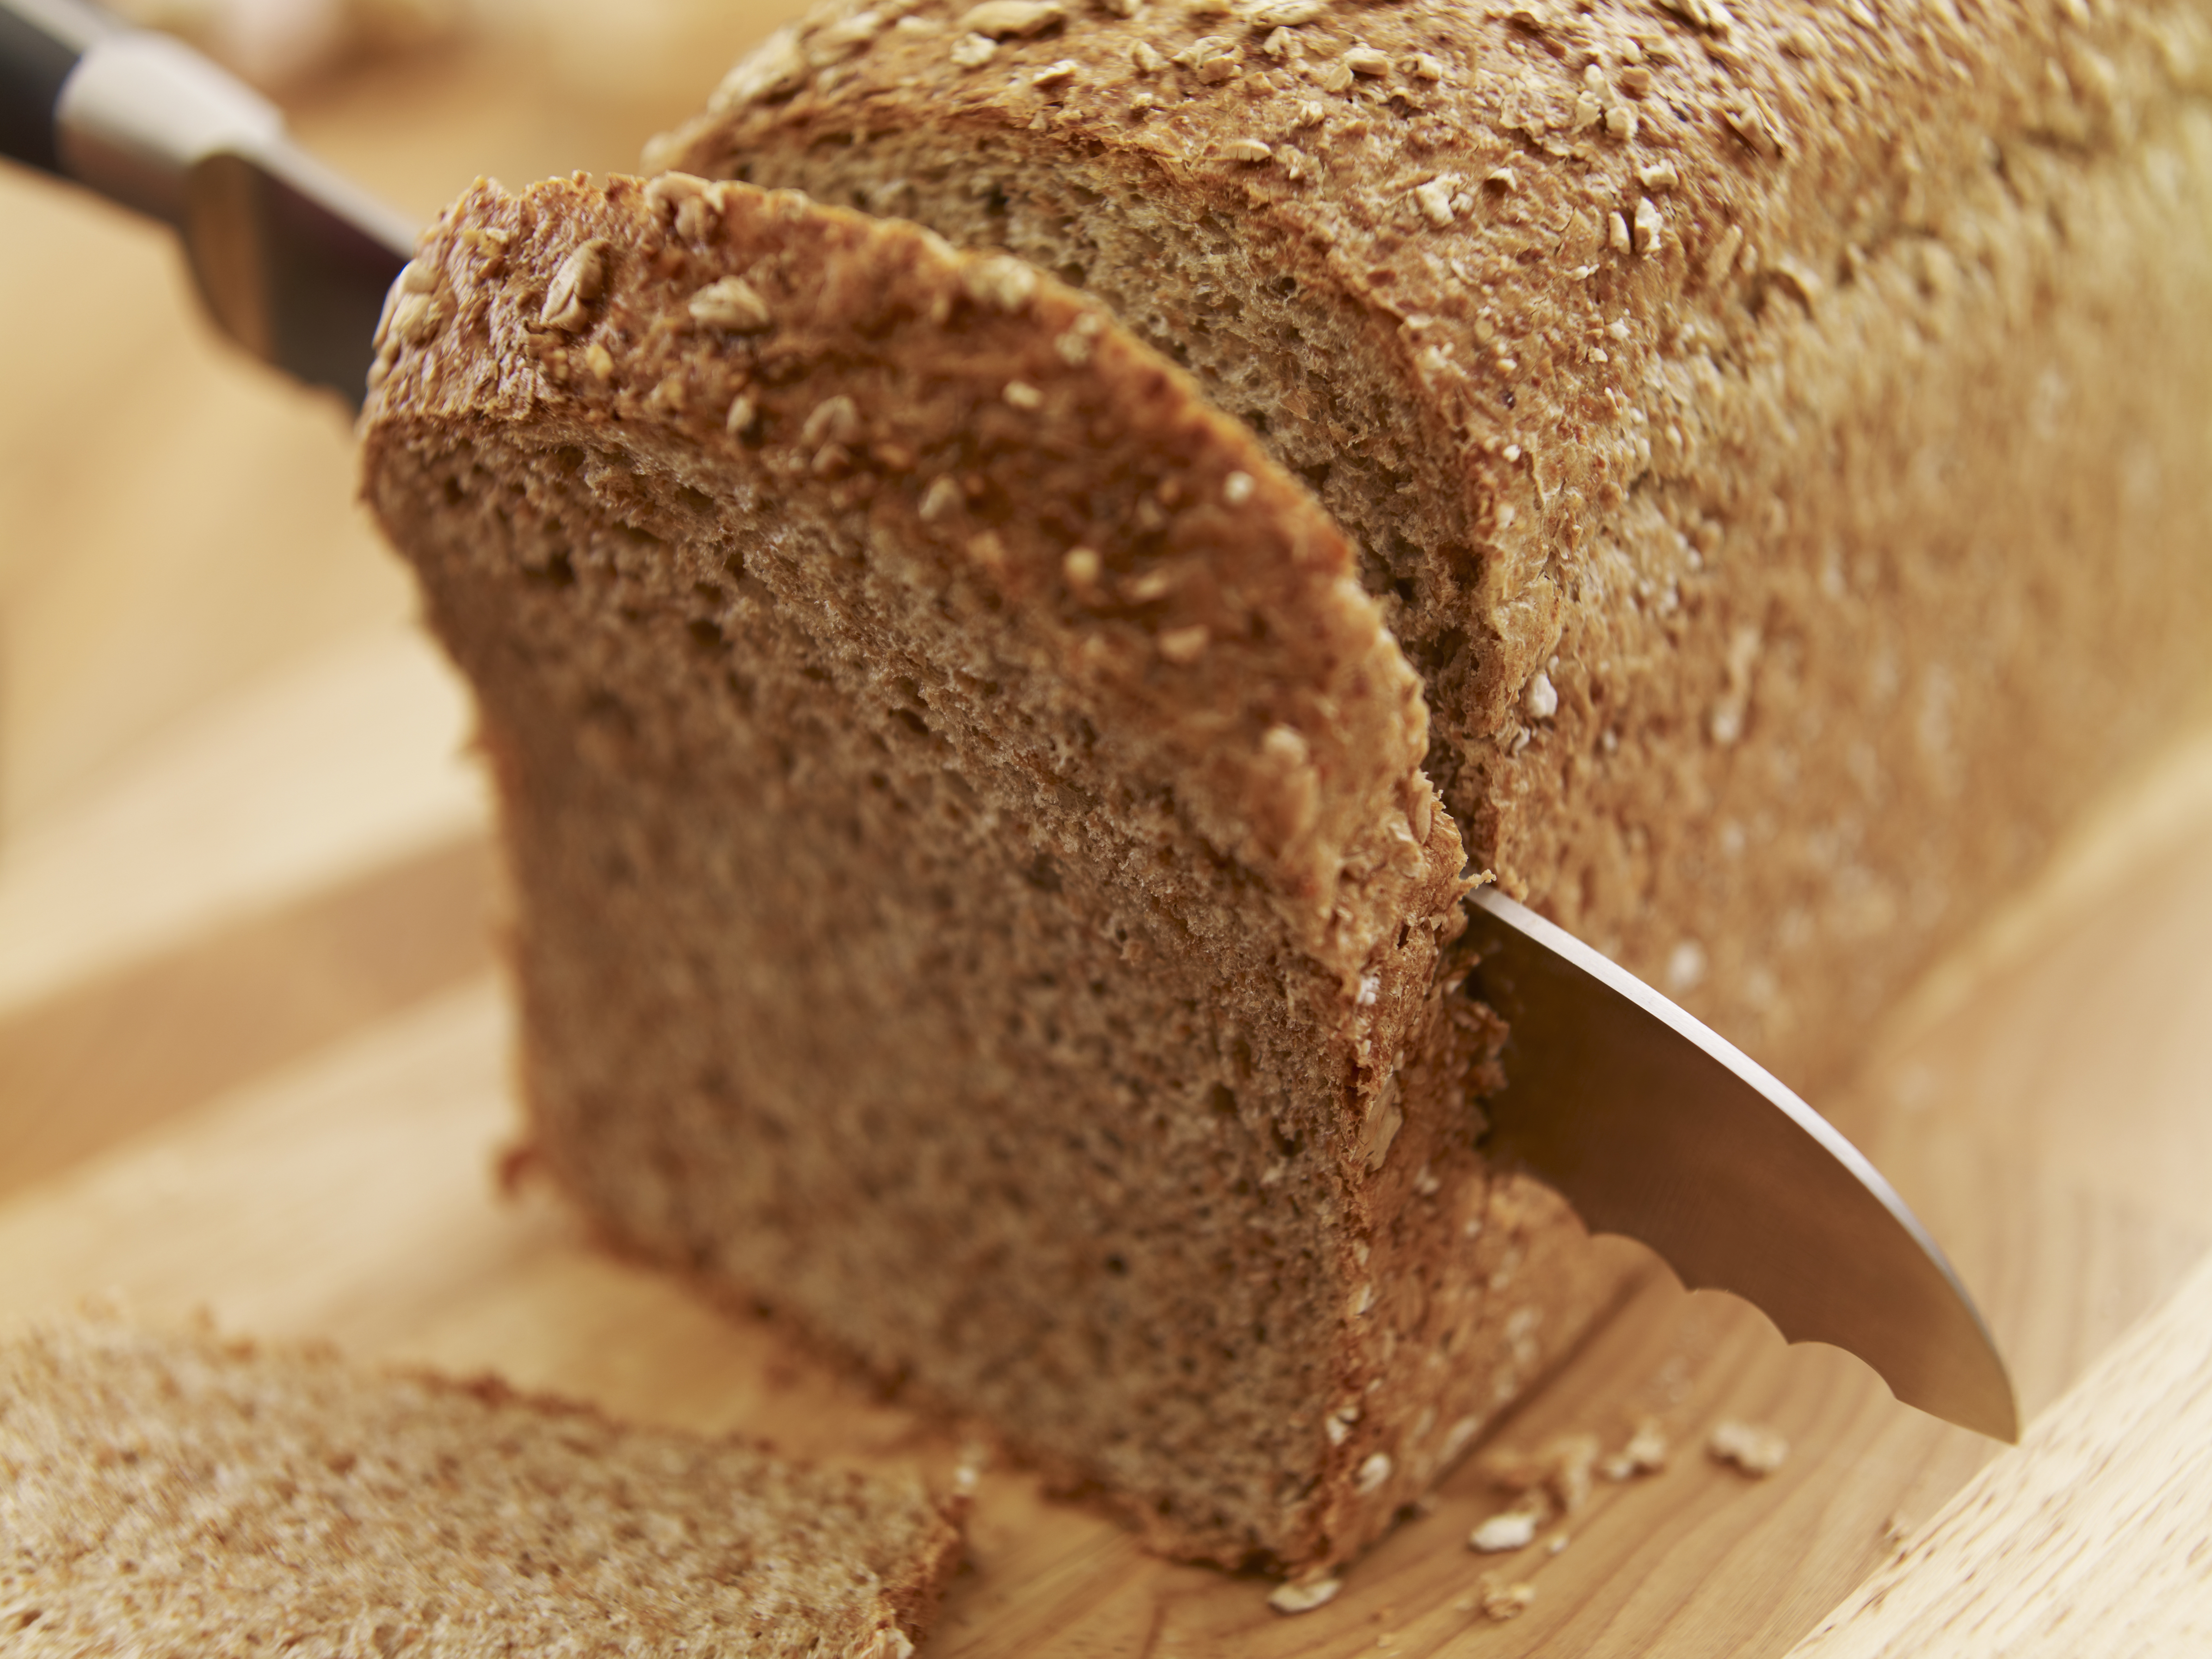 Knife slicing fresh bread loaf